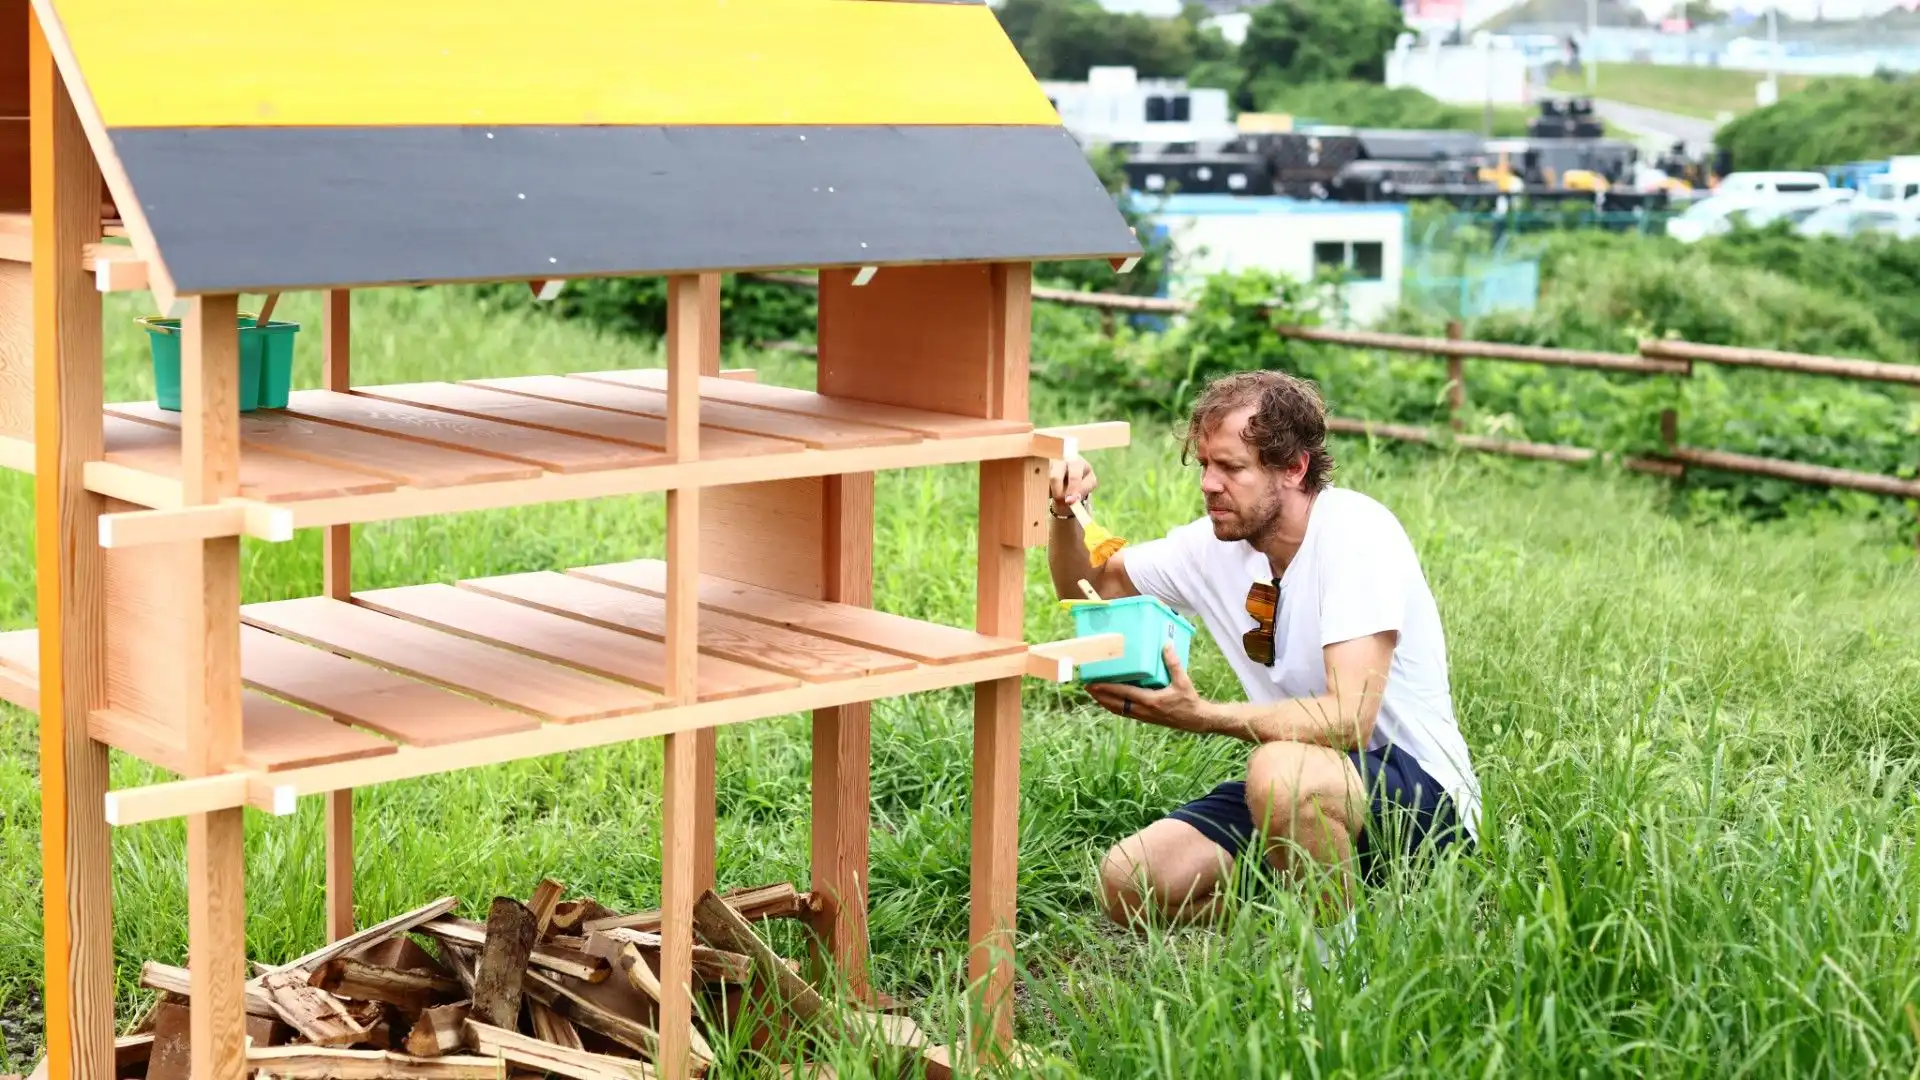 Le api sono importantissime per l'ecosistema e Vettel lo sa bene